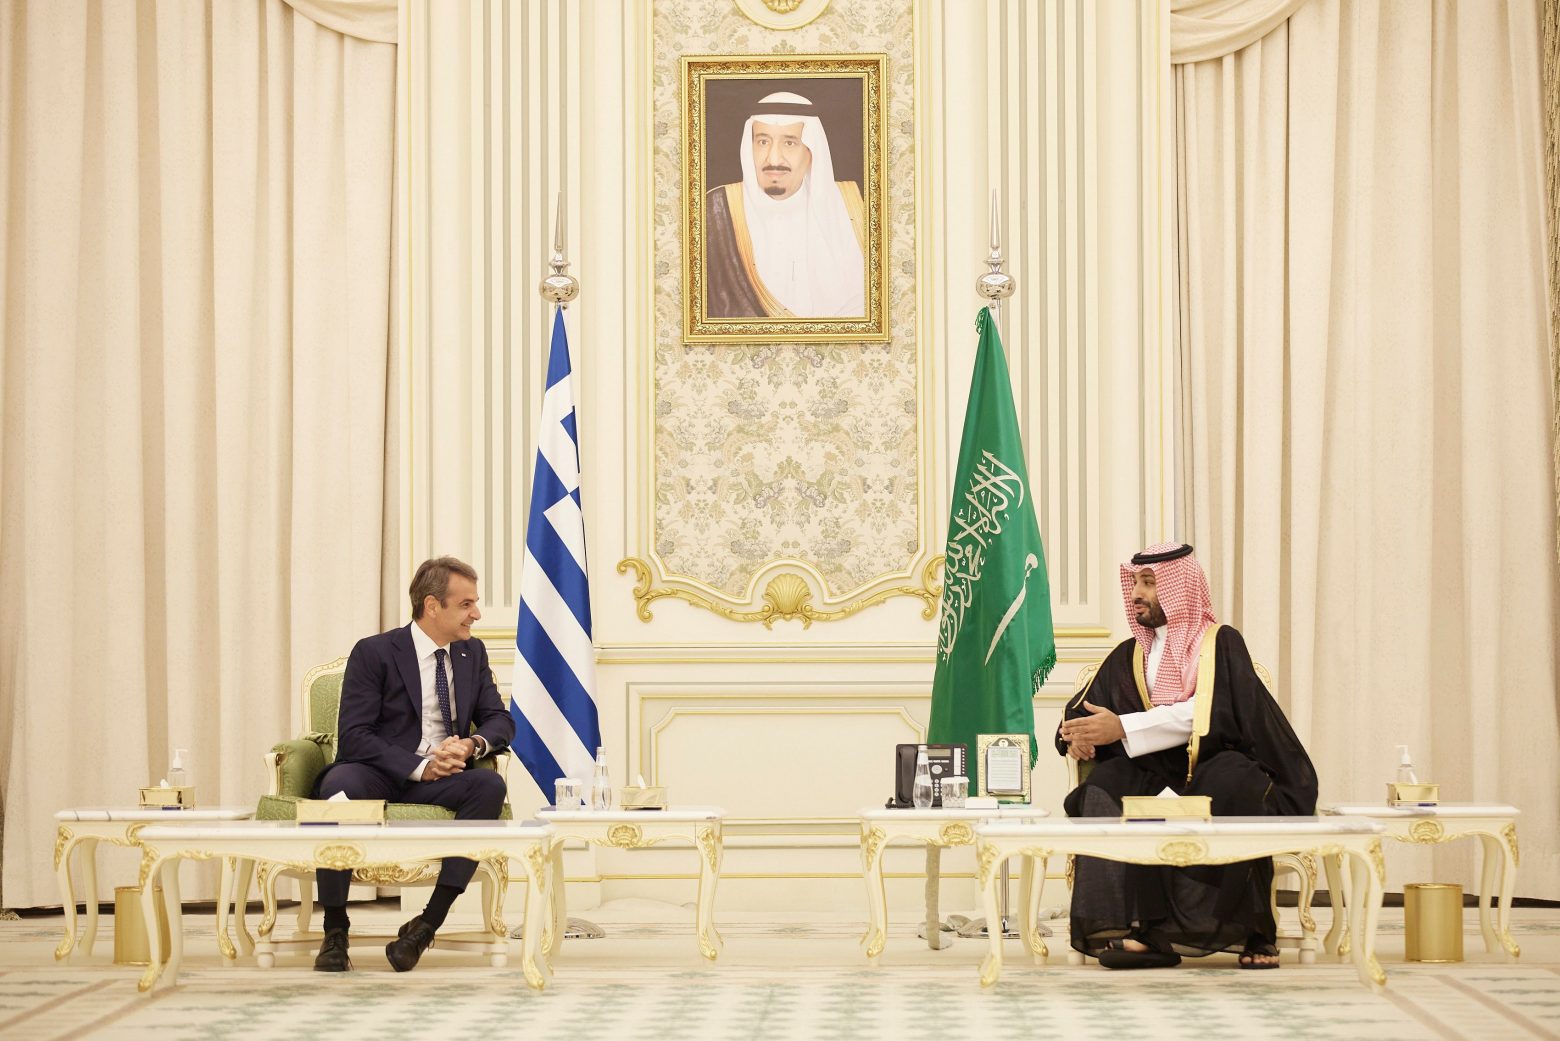 Μητσοτάκης και πρίγκιπας Αλ Σαούντ – Θεσμοθέτηση Ανώτατου Συμβουλίου Συνεργασίας Ελλάδας και Σαουδικής Αραβίας